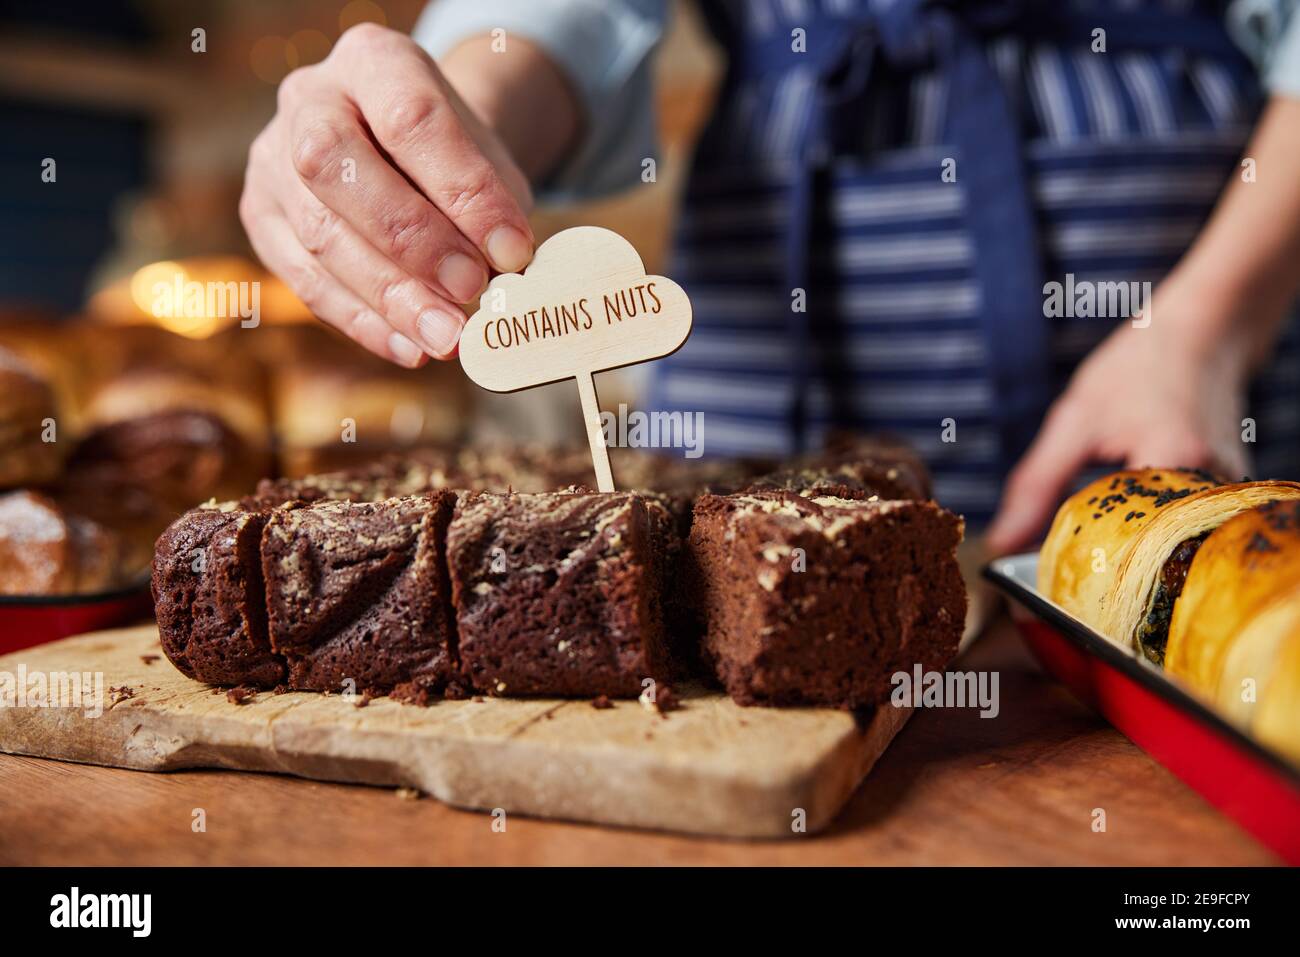 Verkaufsassistent Beim Einlegen Von Backwaren Enthält Nutenetikett In Stapel Frisch Gebackene Brownies Stockfoto